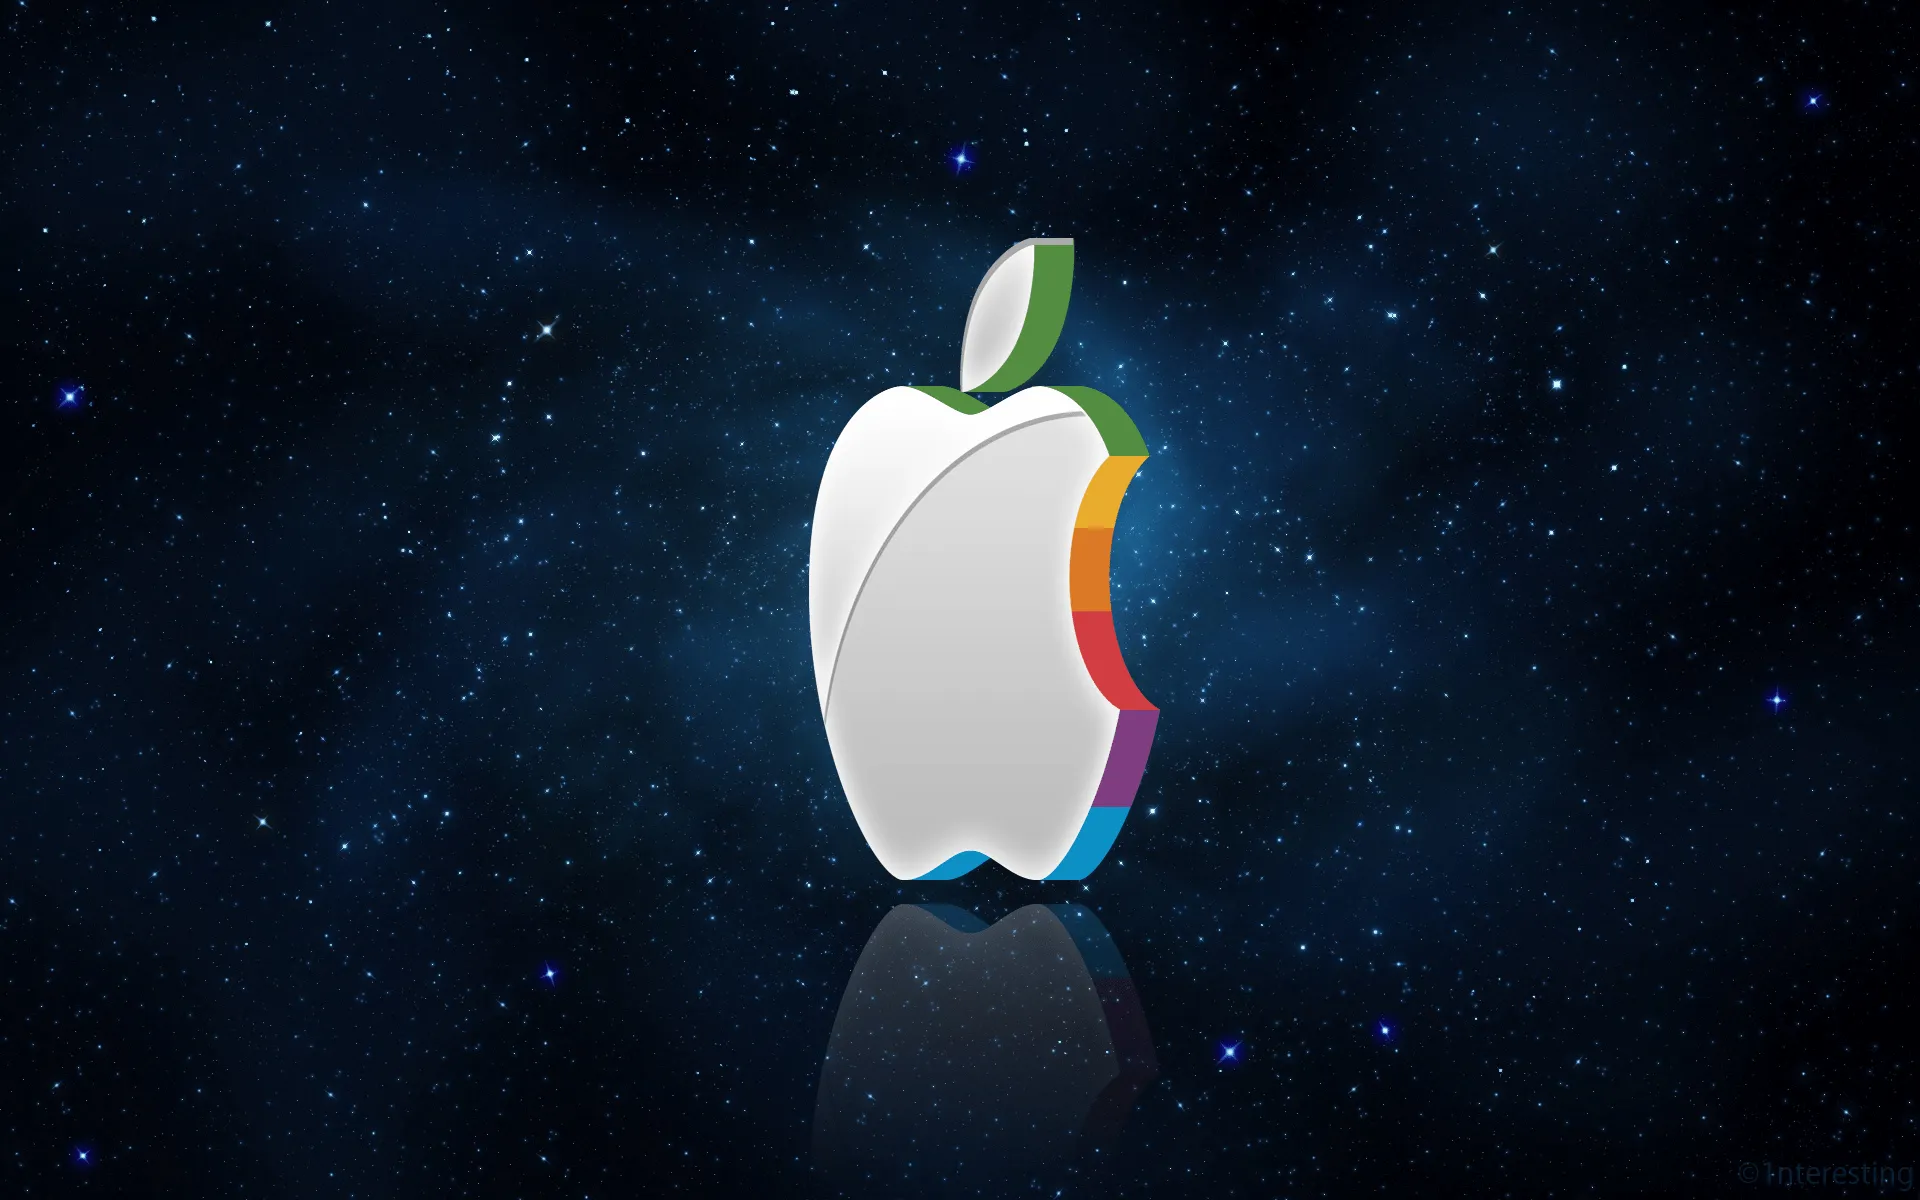 3D Apple Logo Wallpaper by 1nteresting on DeviantArt